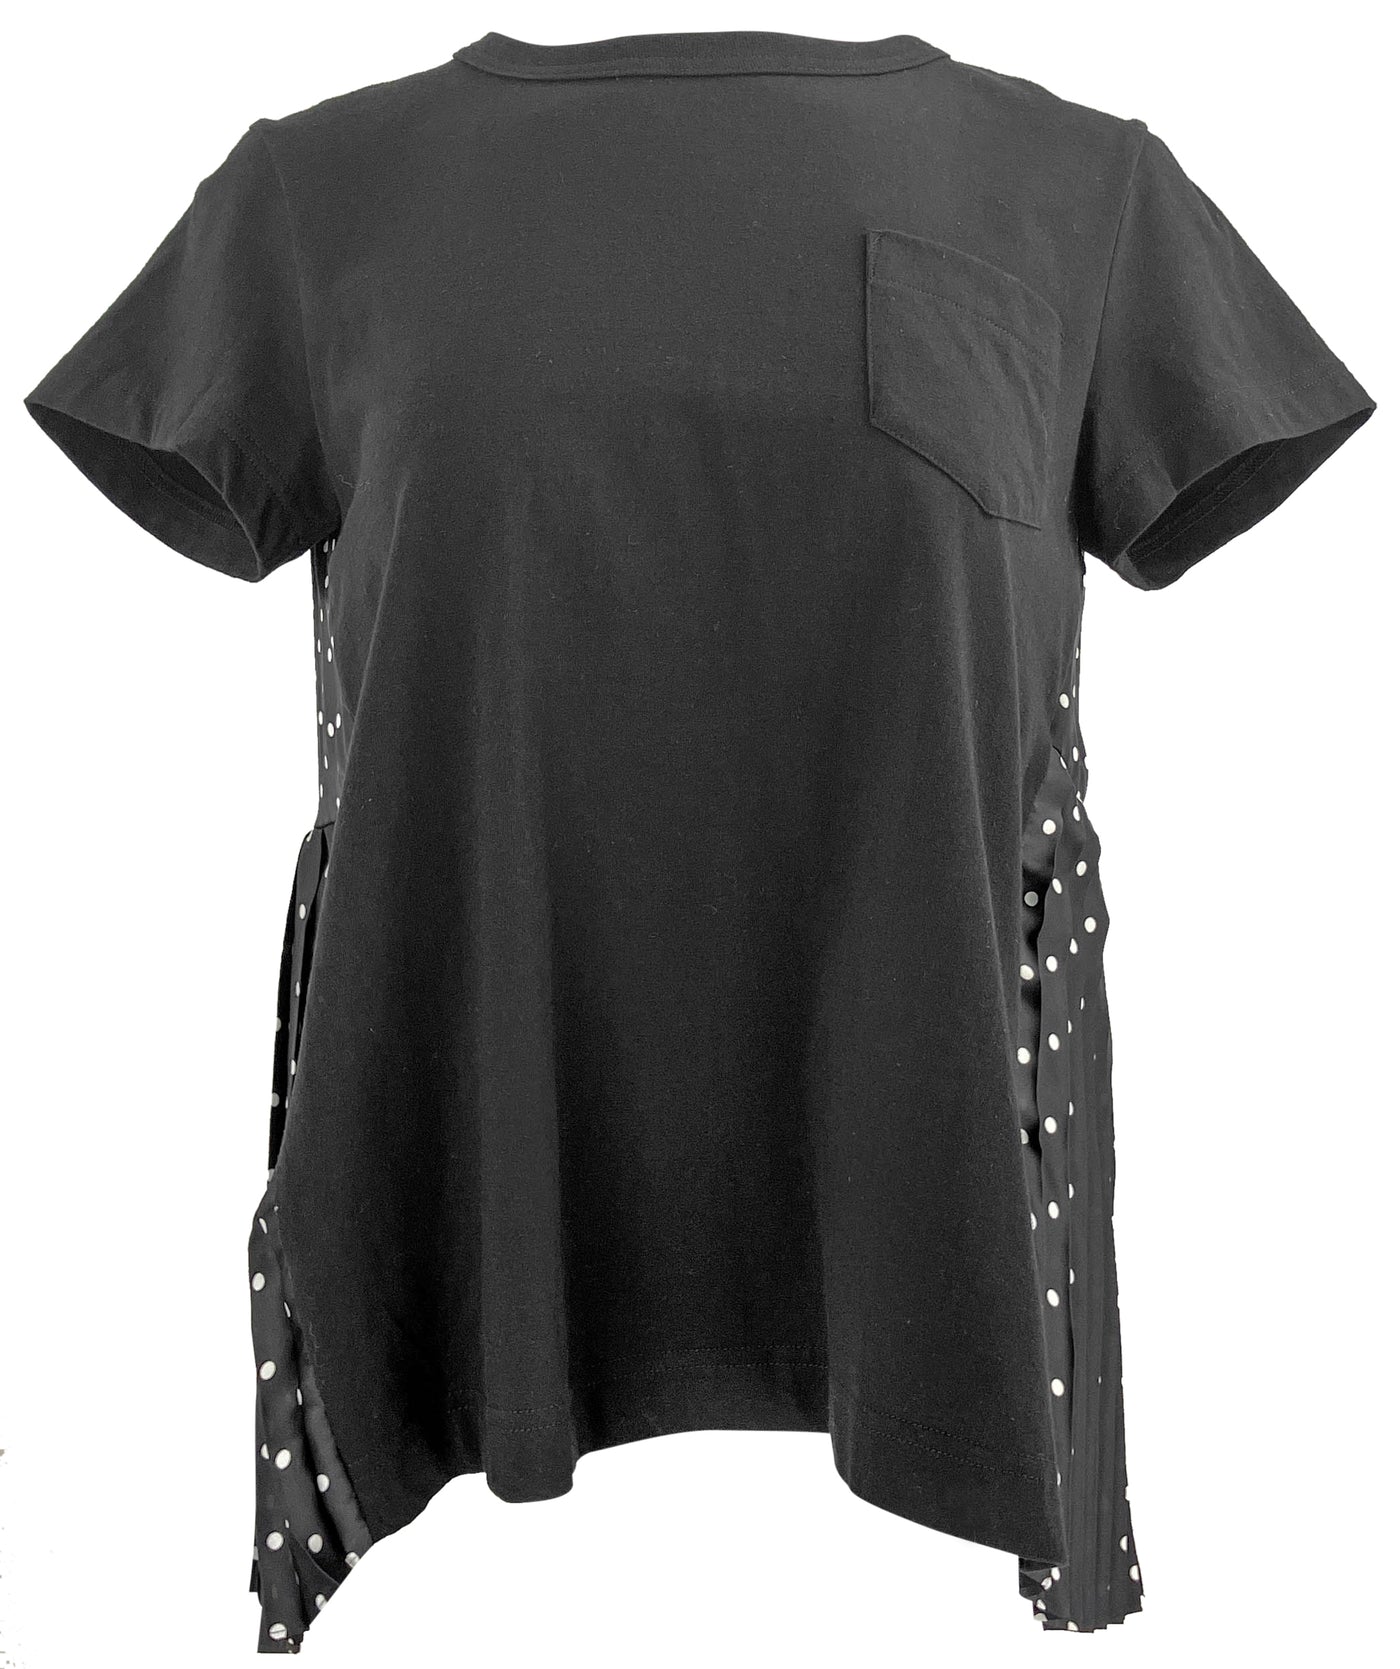 sacai Polka Dot Print T-Shirt in Black - Discounts on sacai at UAL